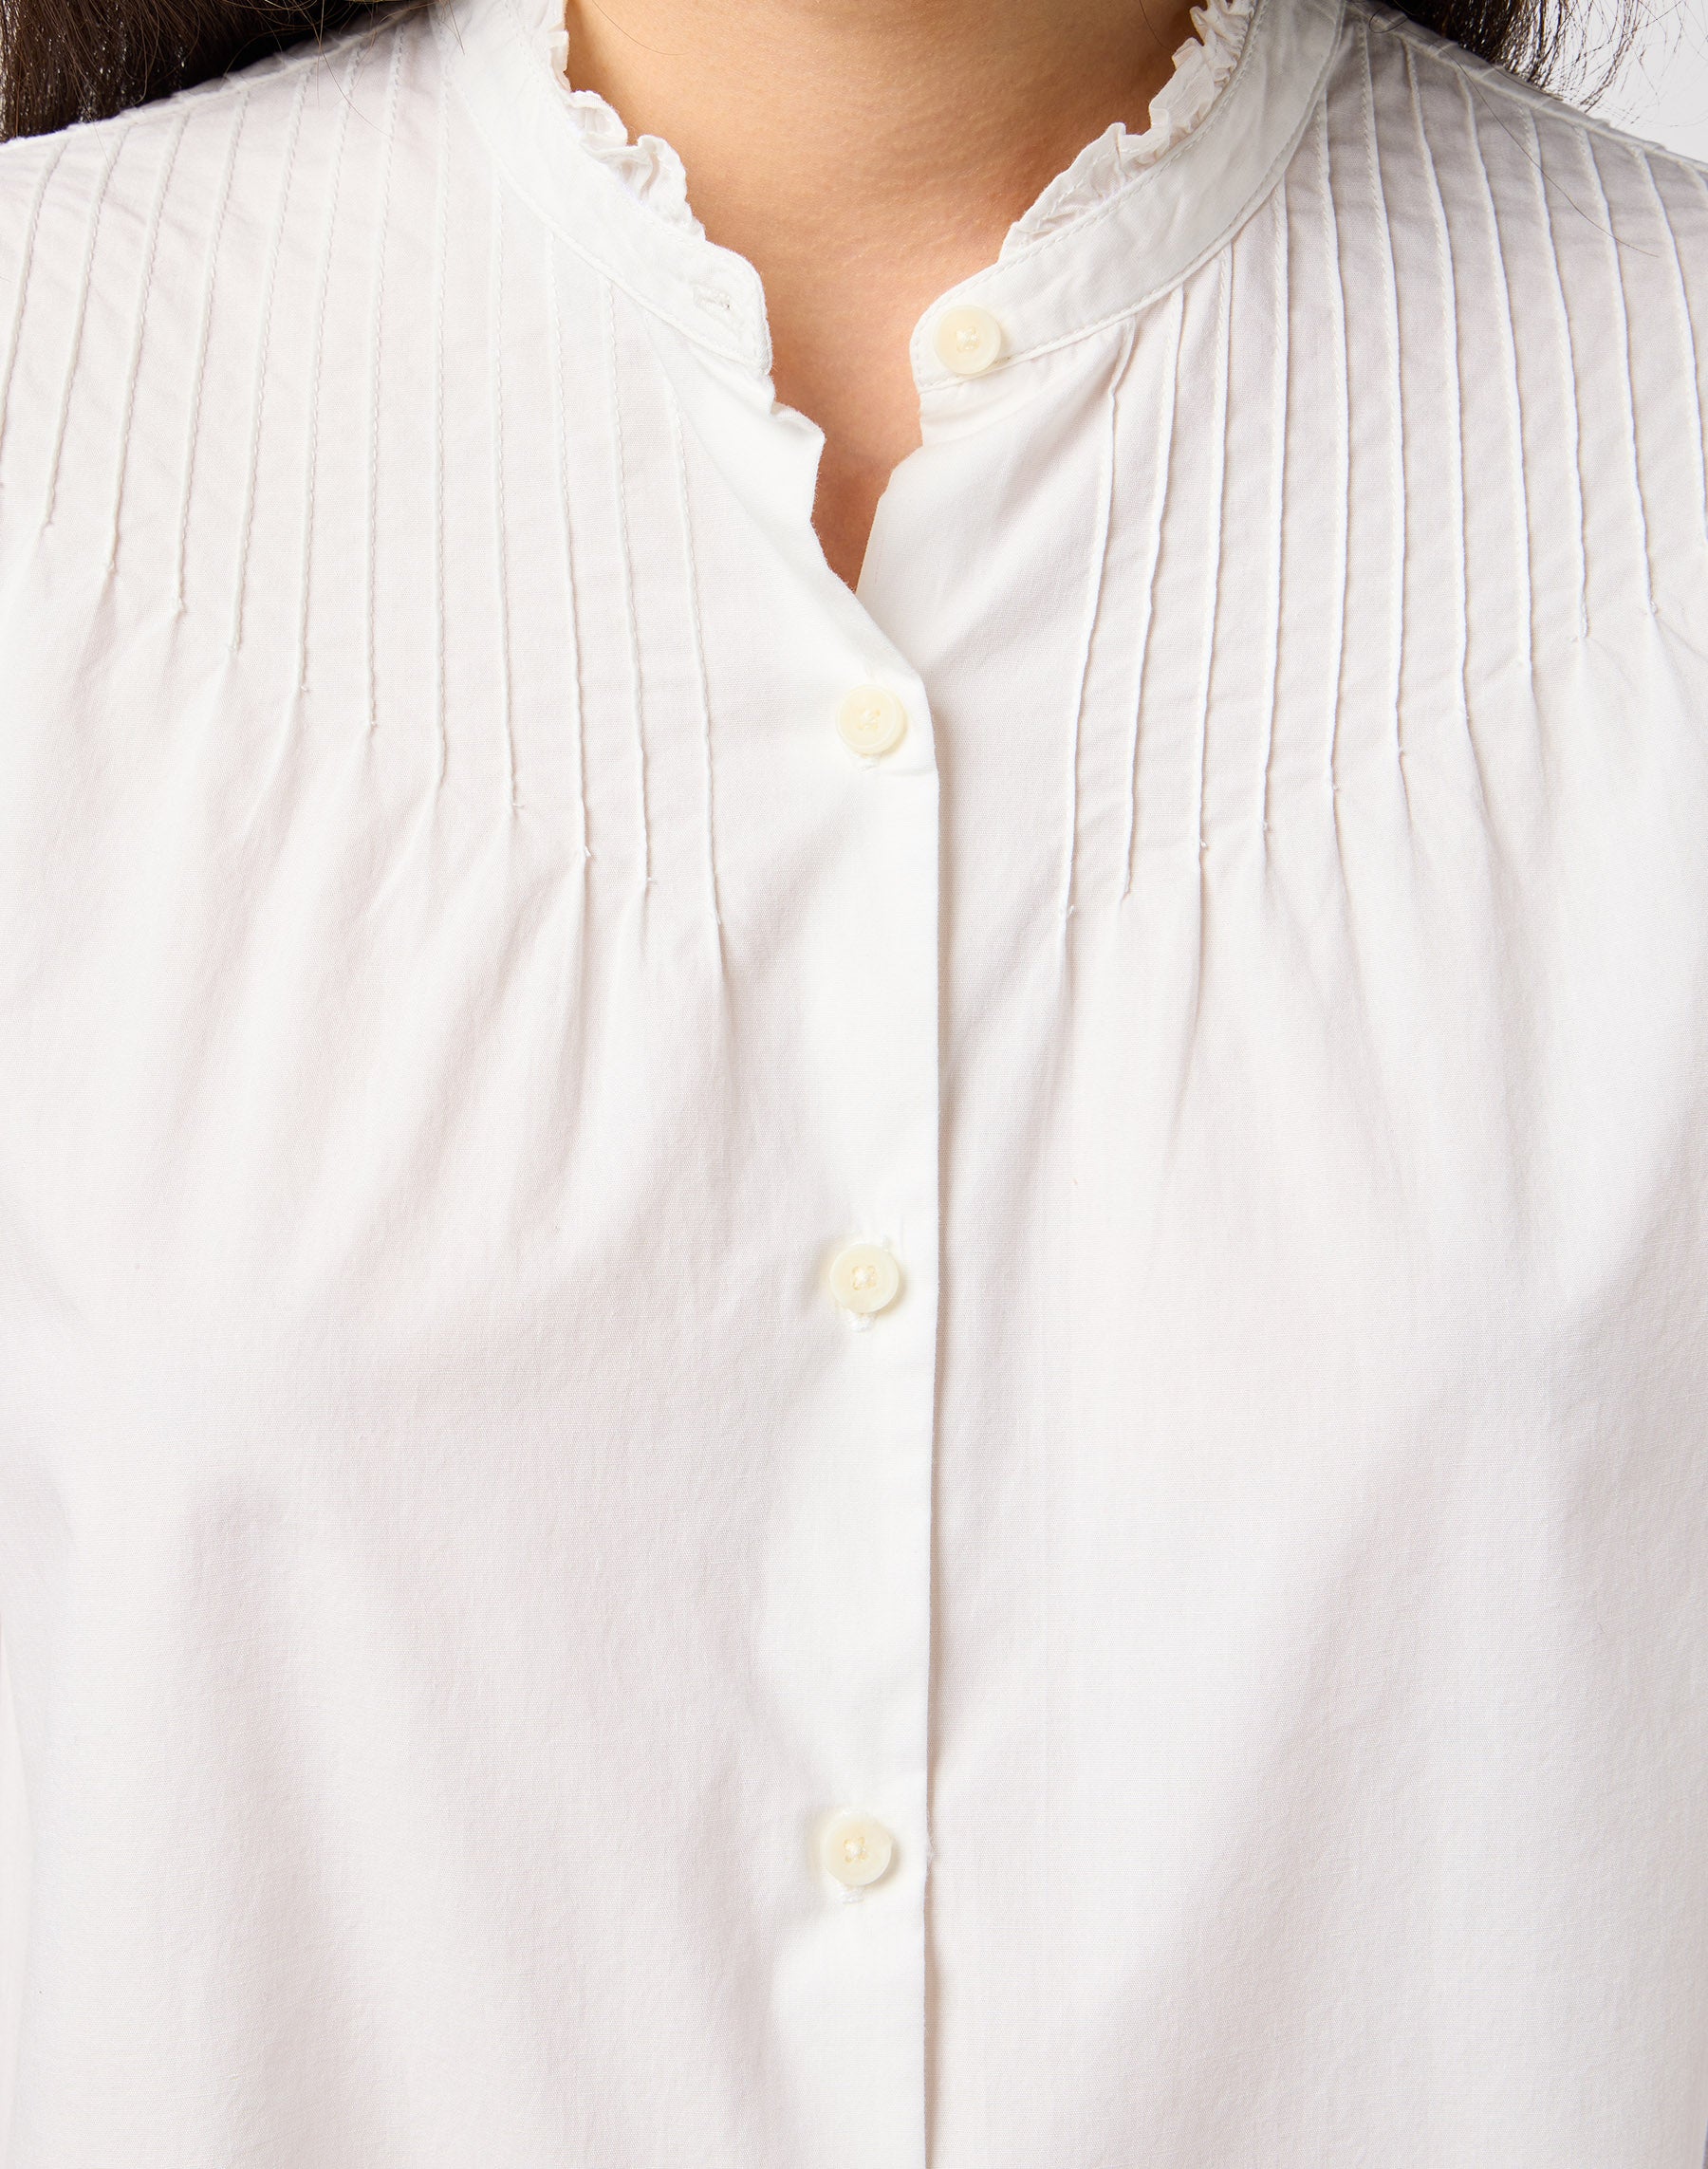 Pintuck Blouse in White Hemden Wrangler   